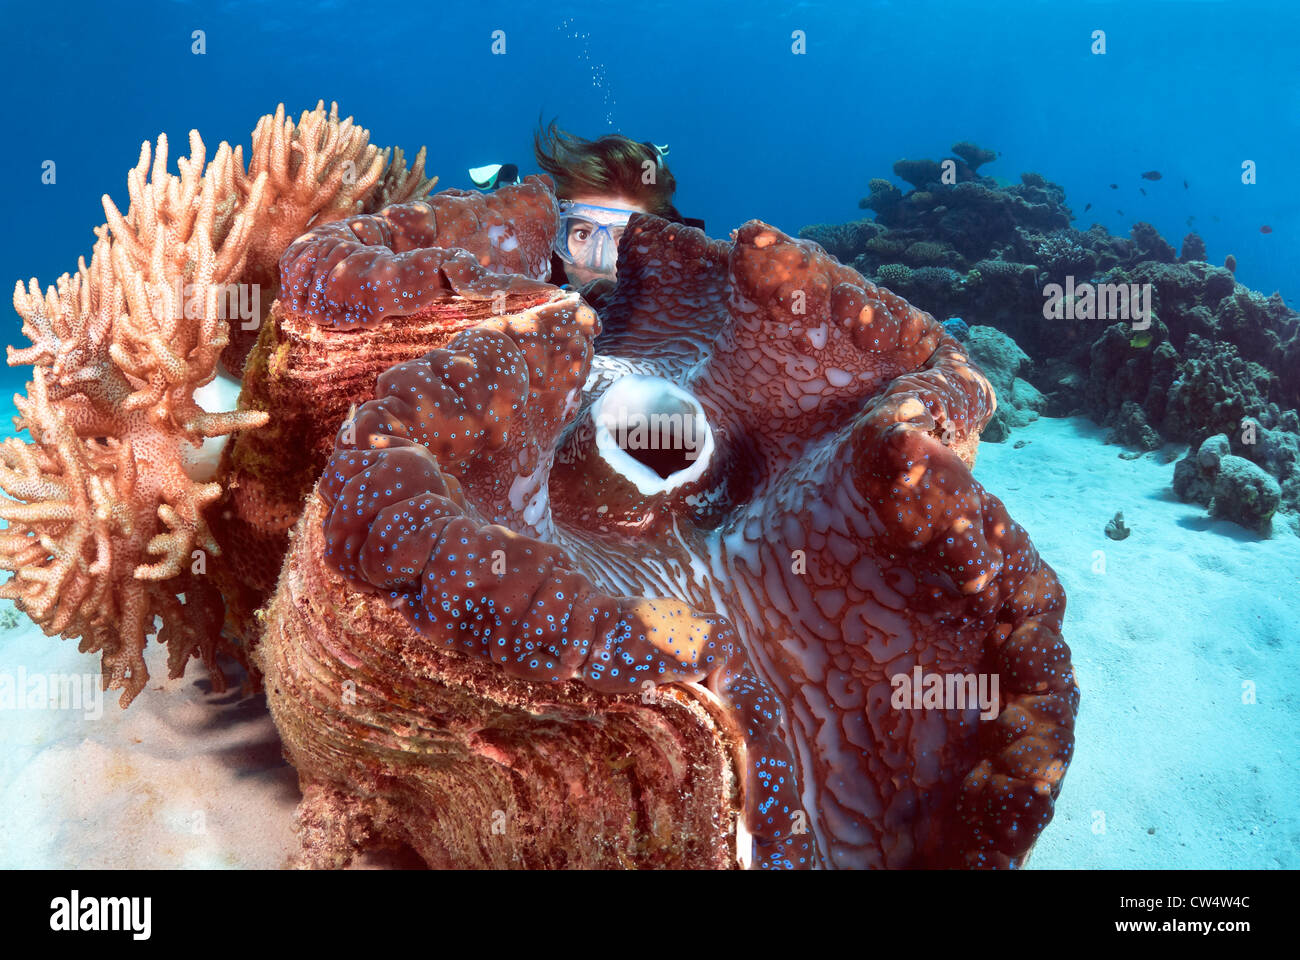 Weibliche Taucher mit einer riesigen Muschel Tridacna Gigas Great Barrier Reef und Coral Sea, Pazifischen Ozean, Queensland, Australien Stockfoto